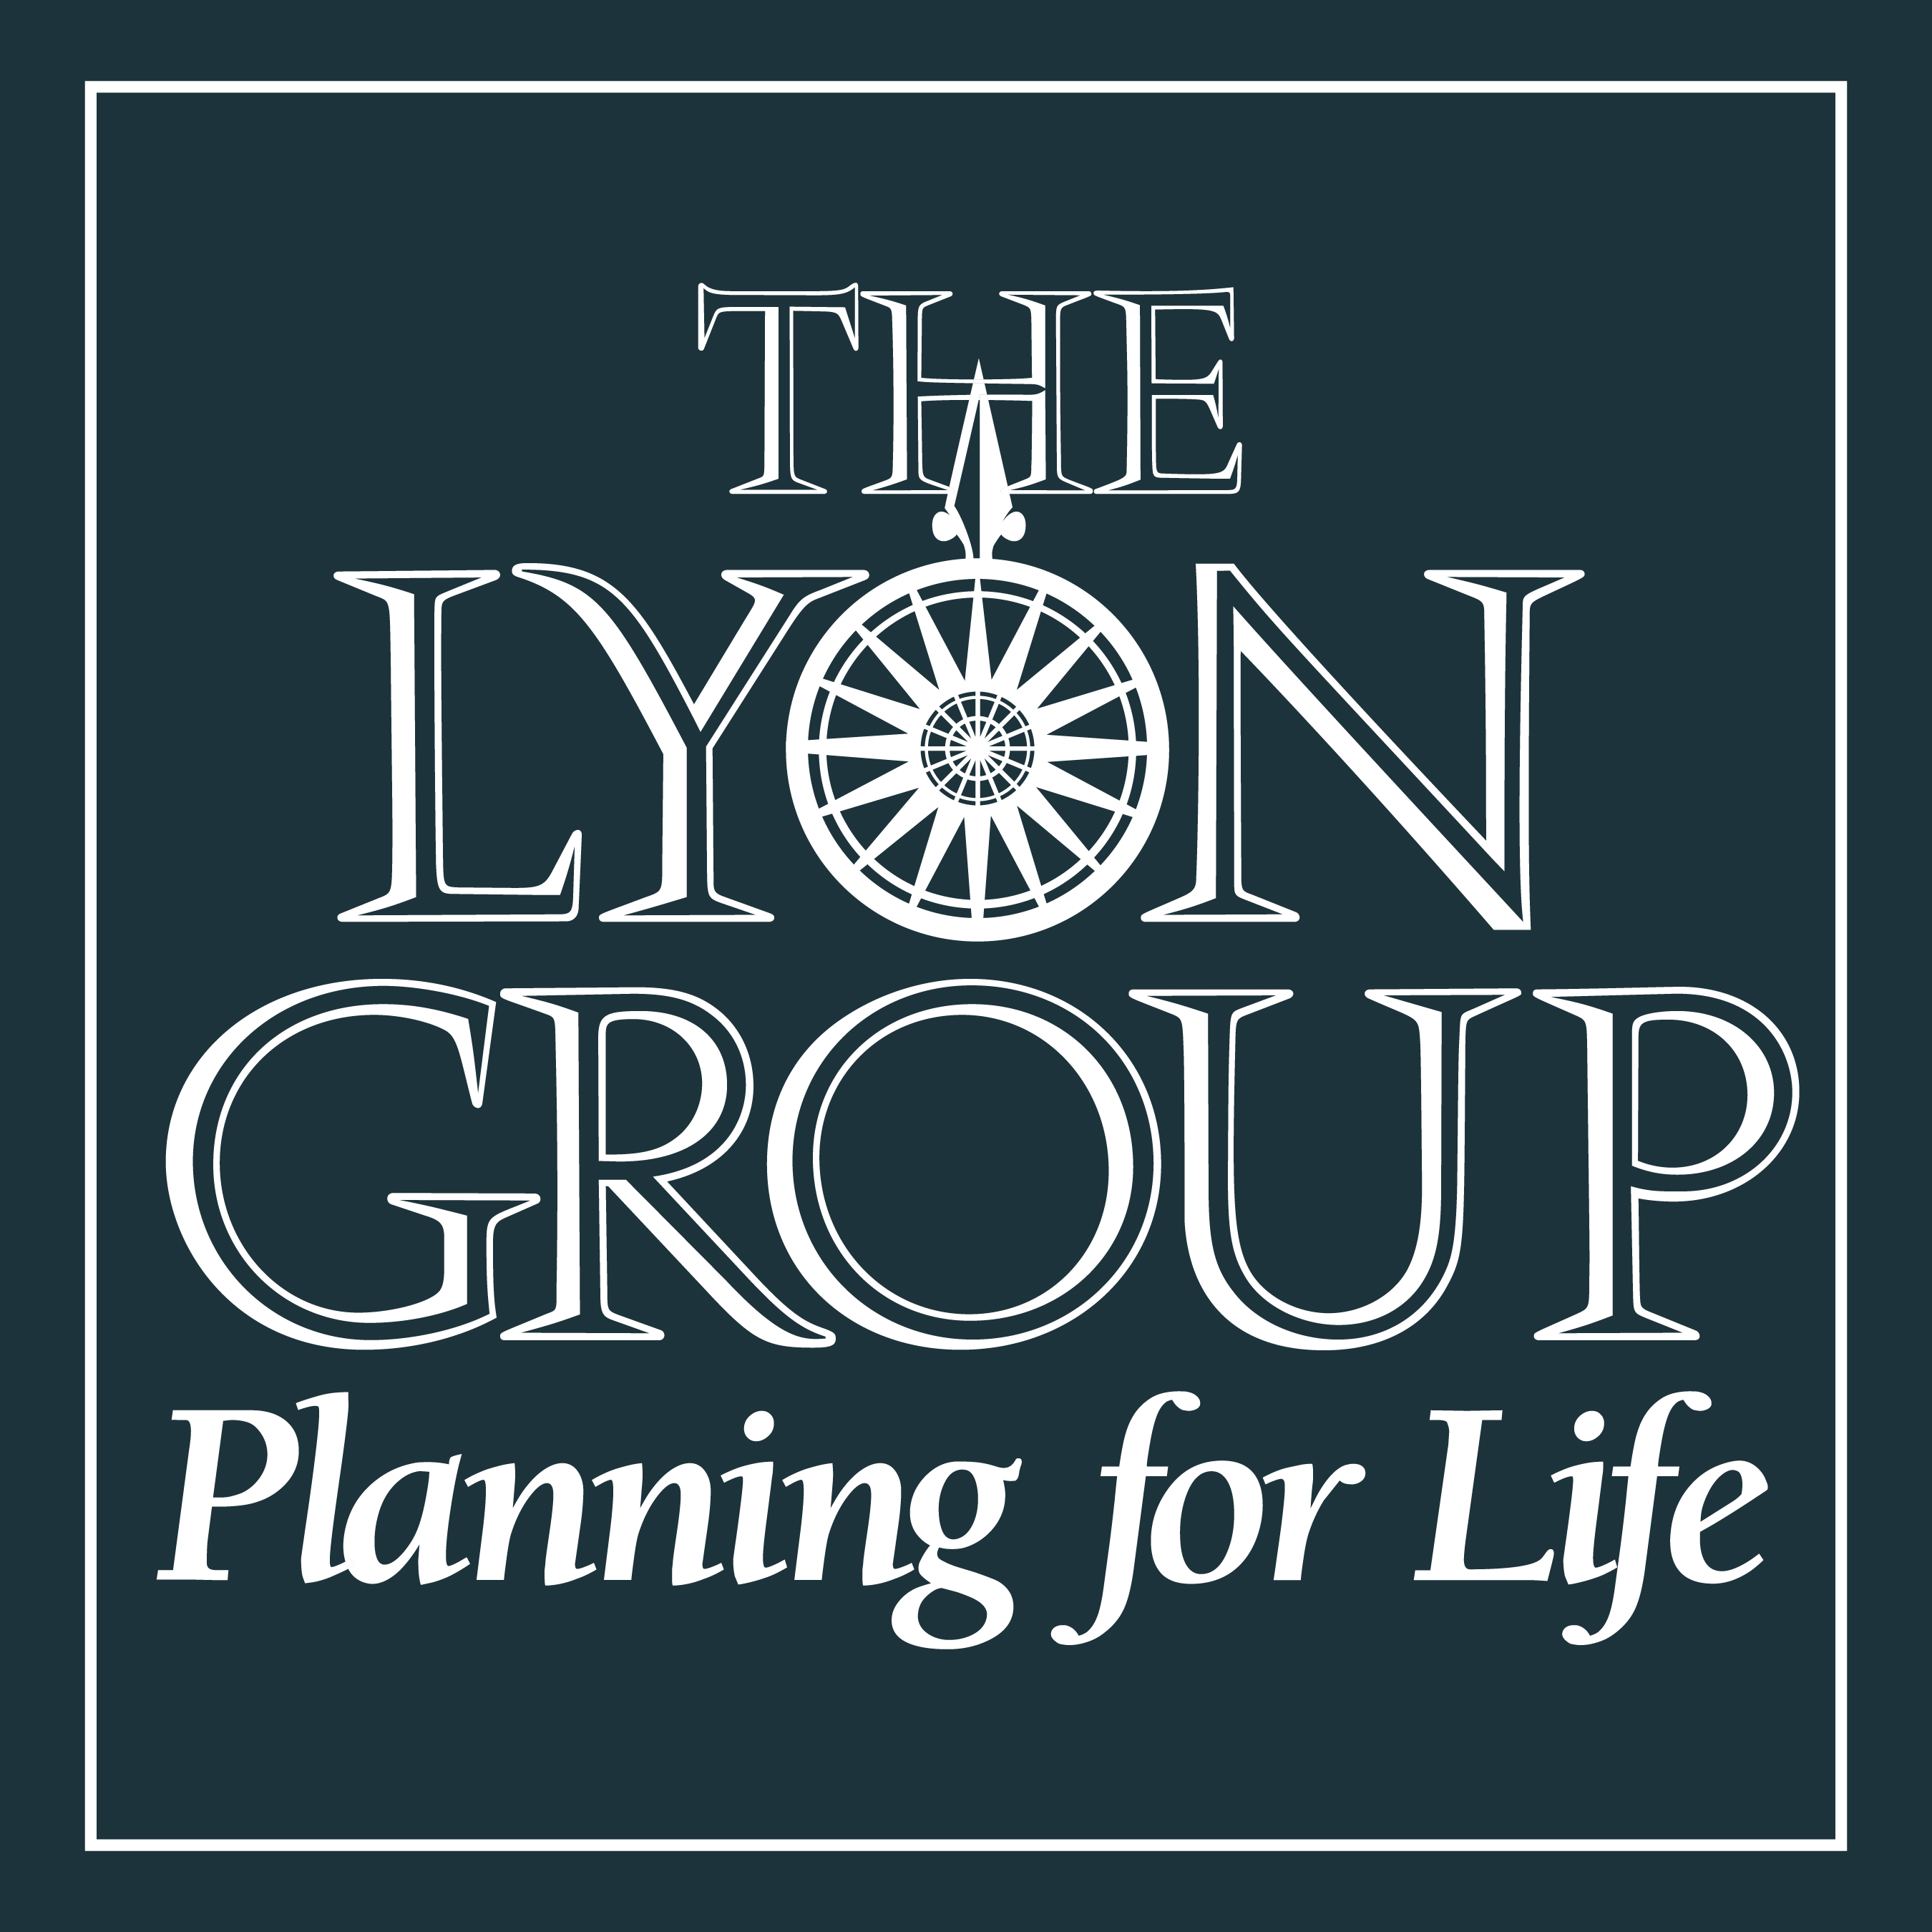 The Lyon Group